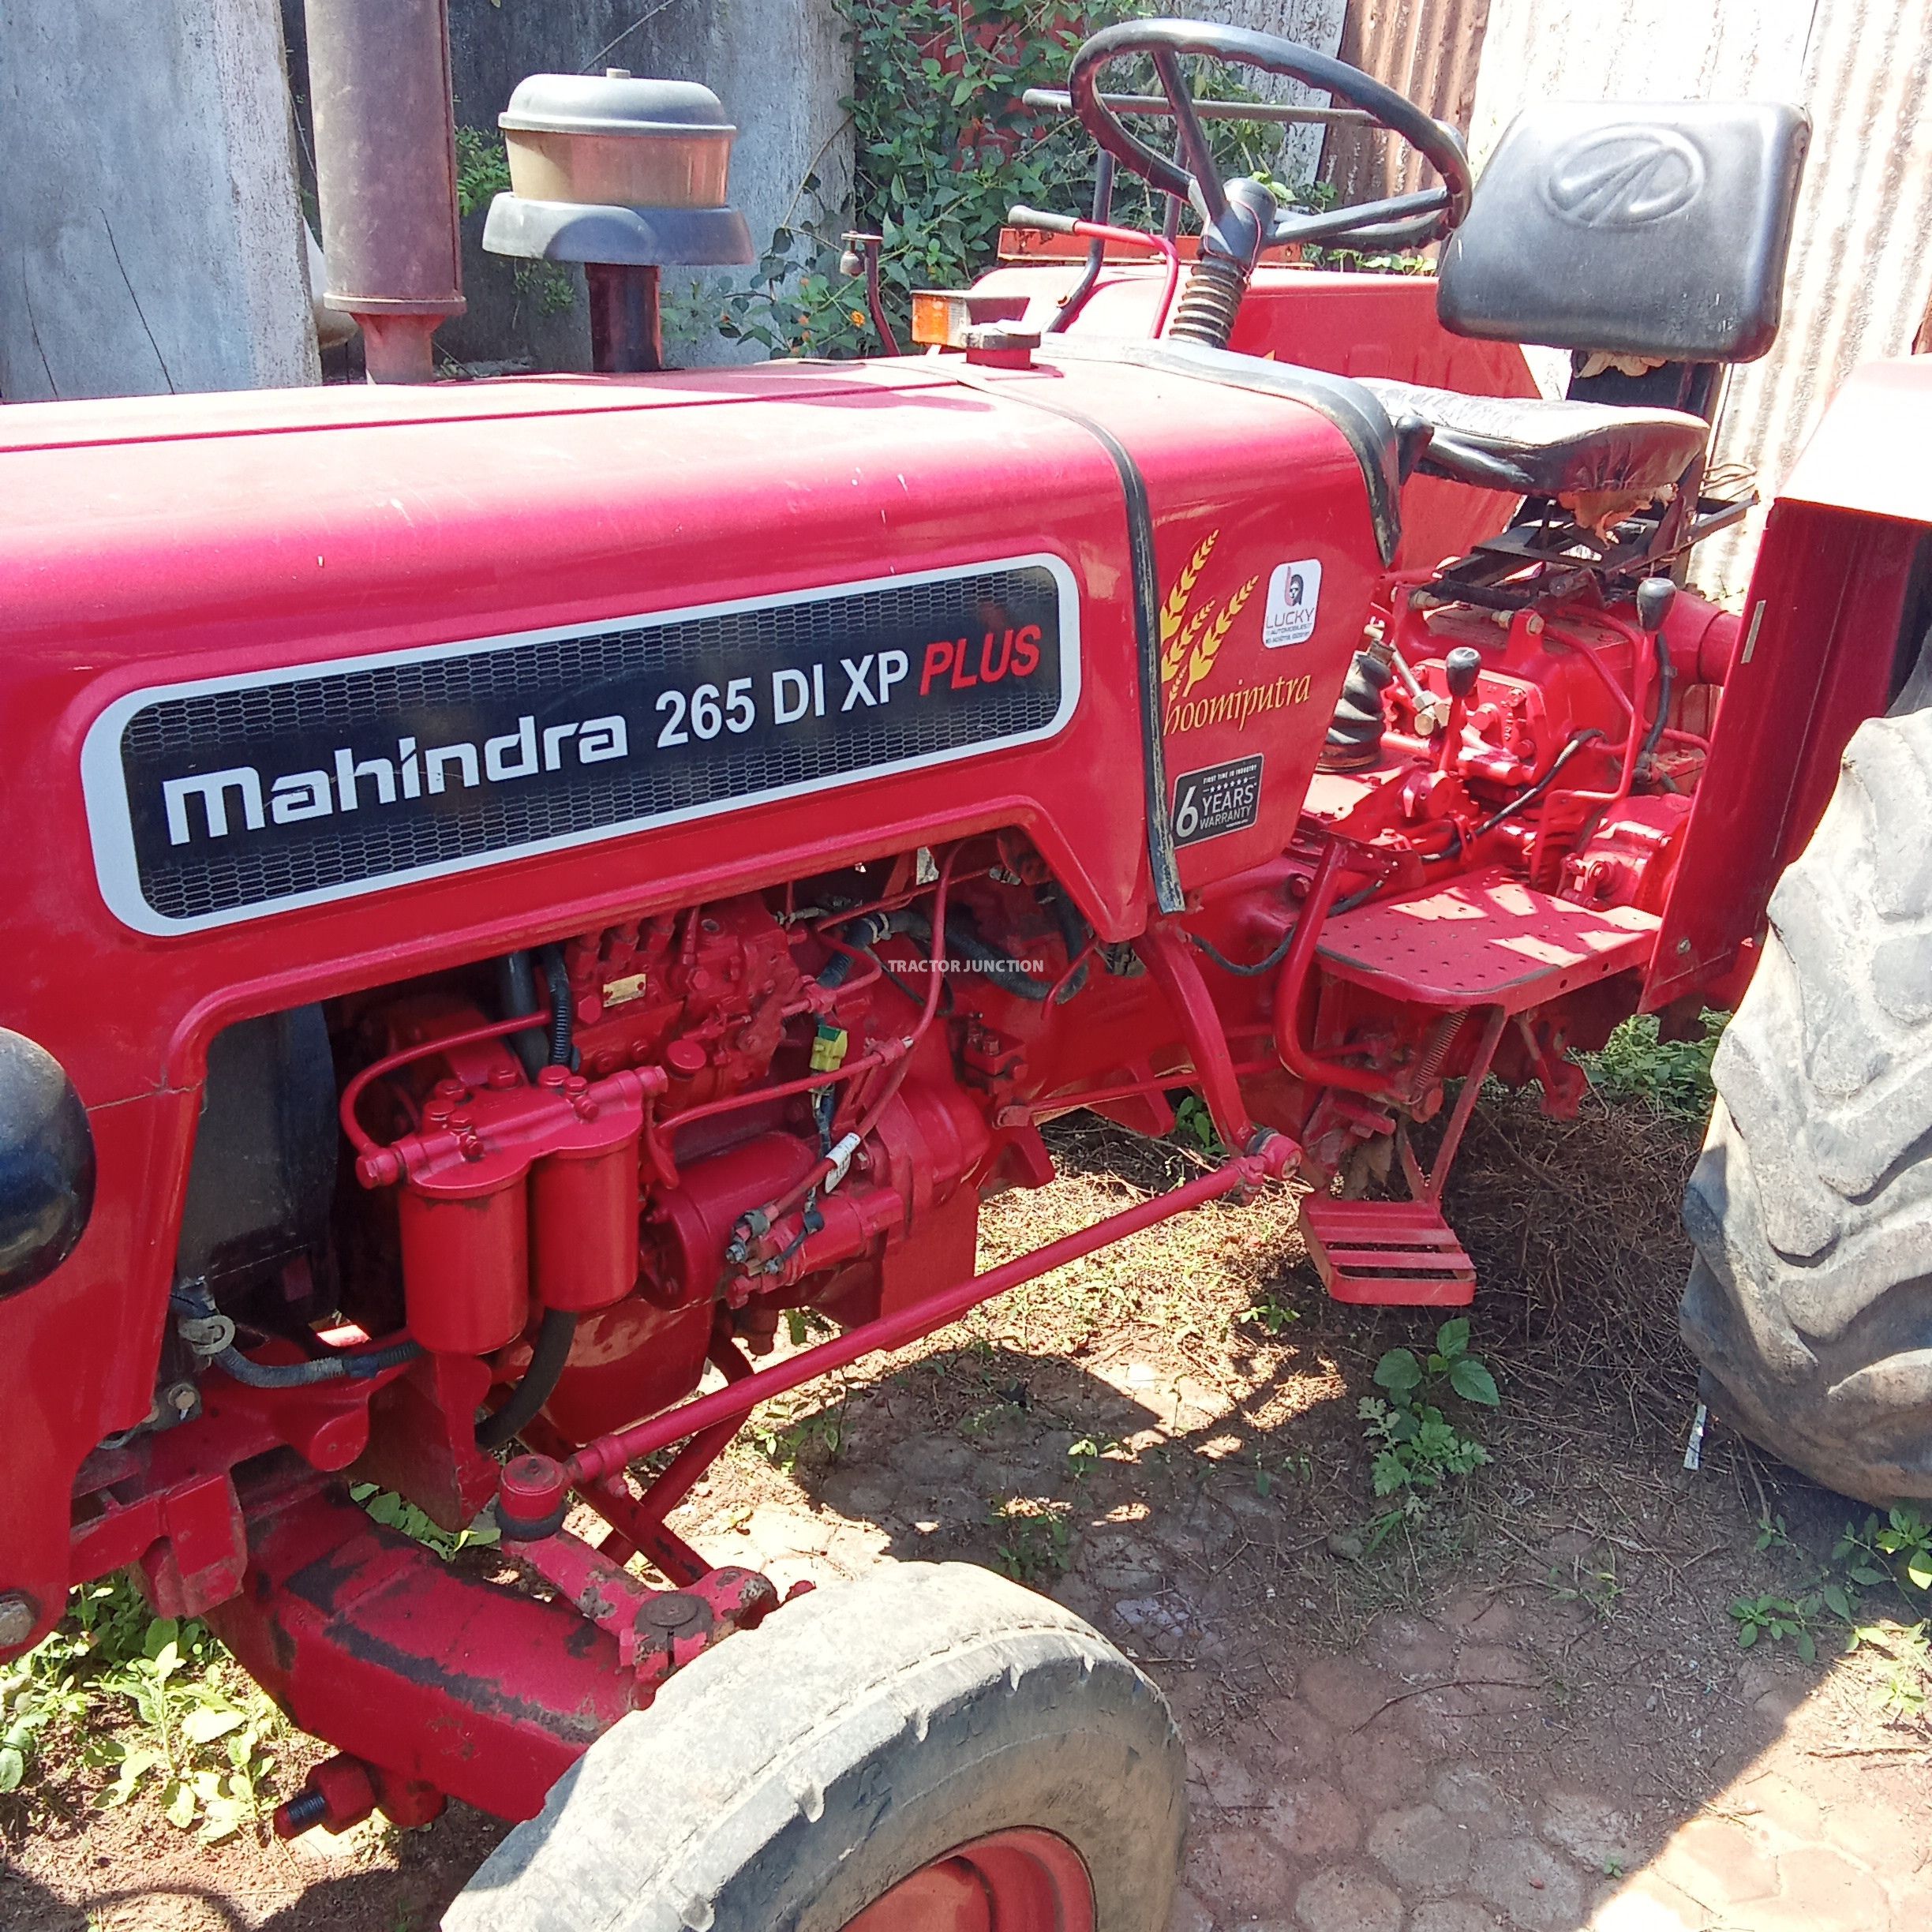 Mahindra 265 DI XP Plus